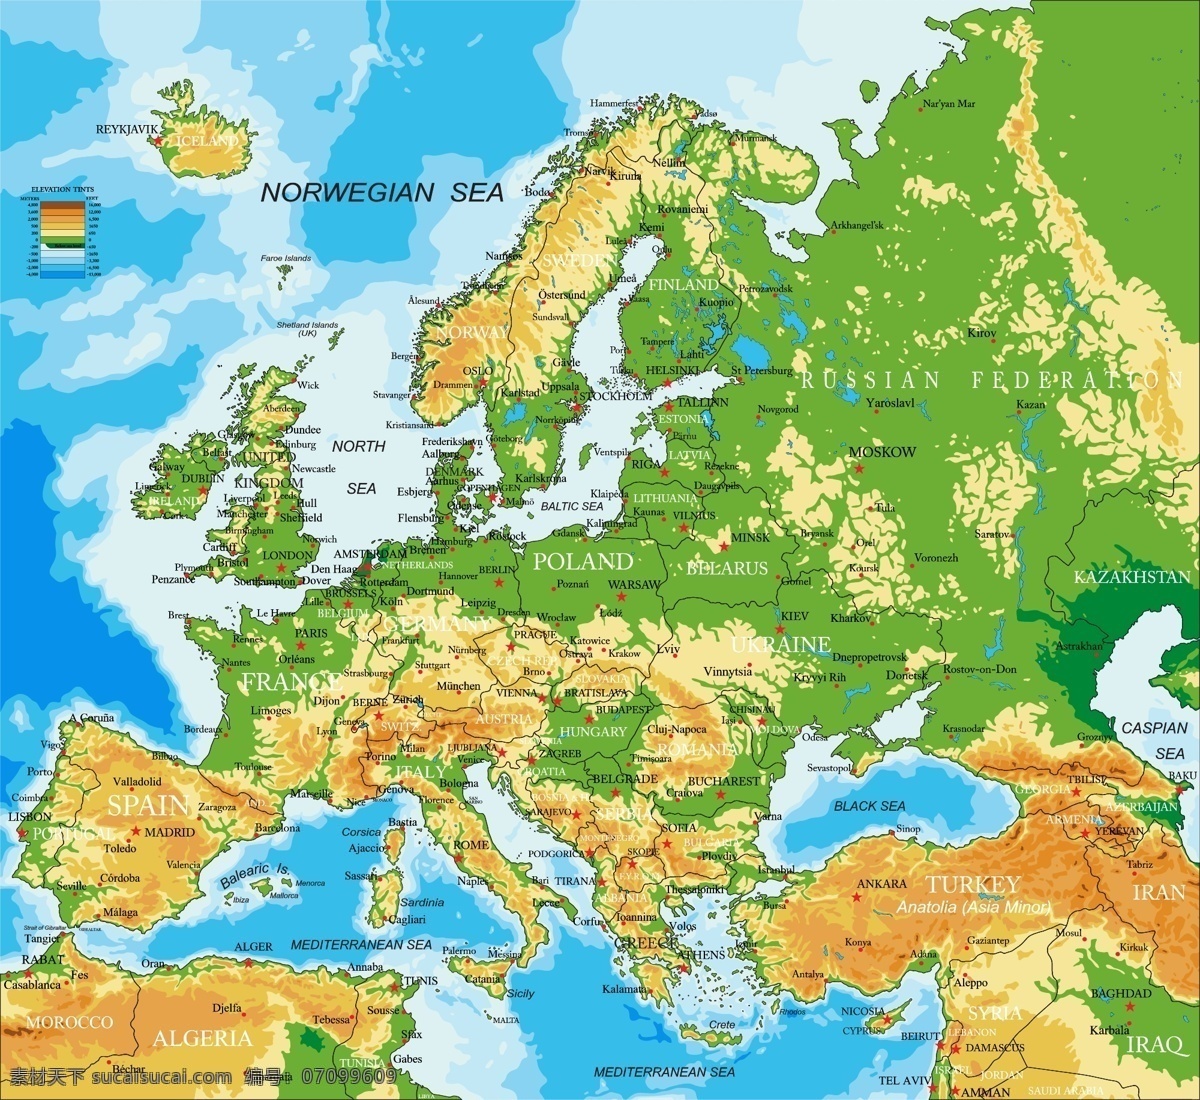 世界 版图 地理 矢量 版图地理 欧洲 非洲 南美洲 国家地图 世界地图 彩色 地图 矢量地图 绿色